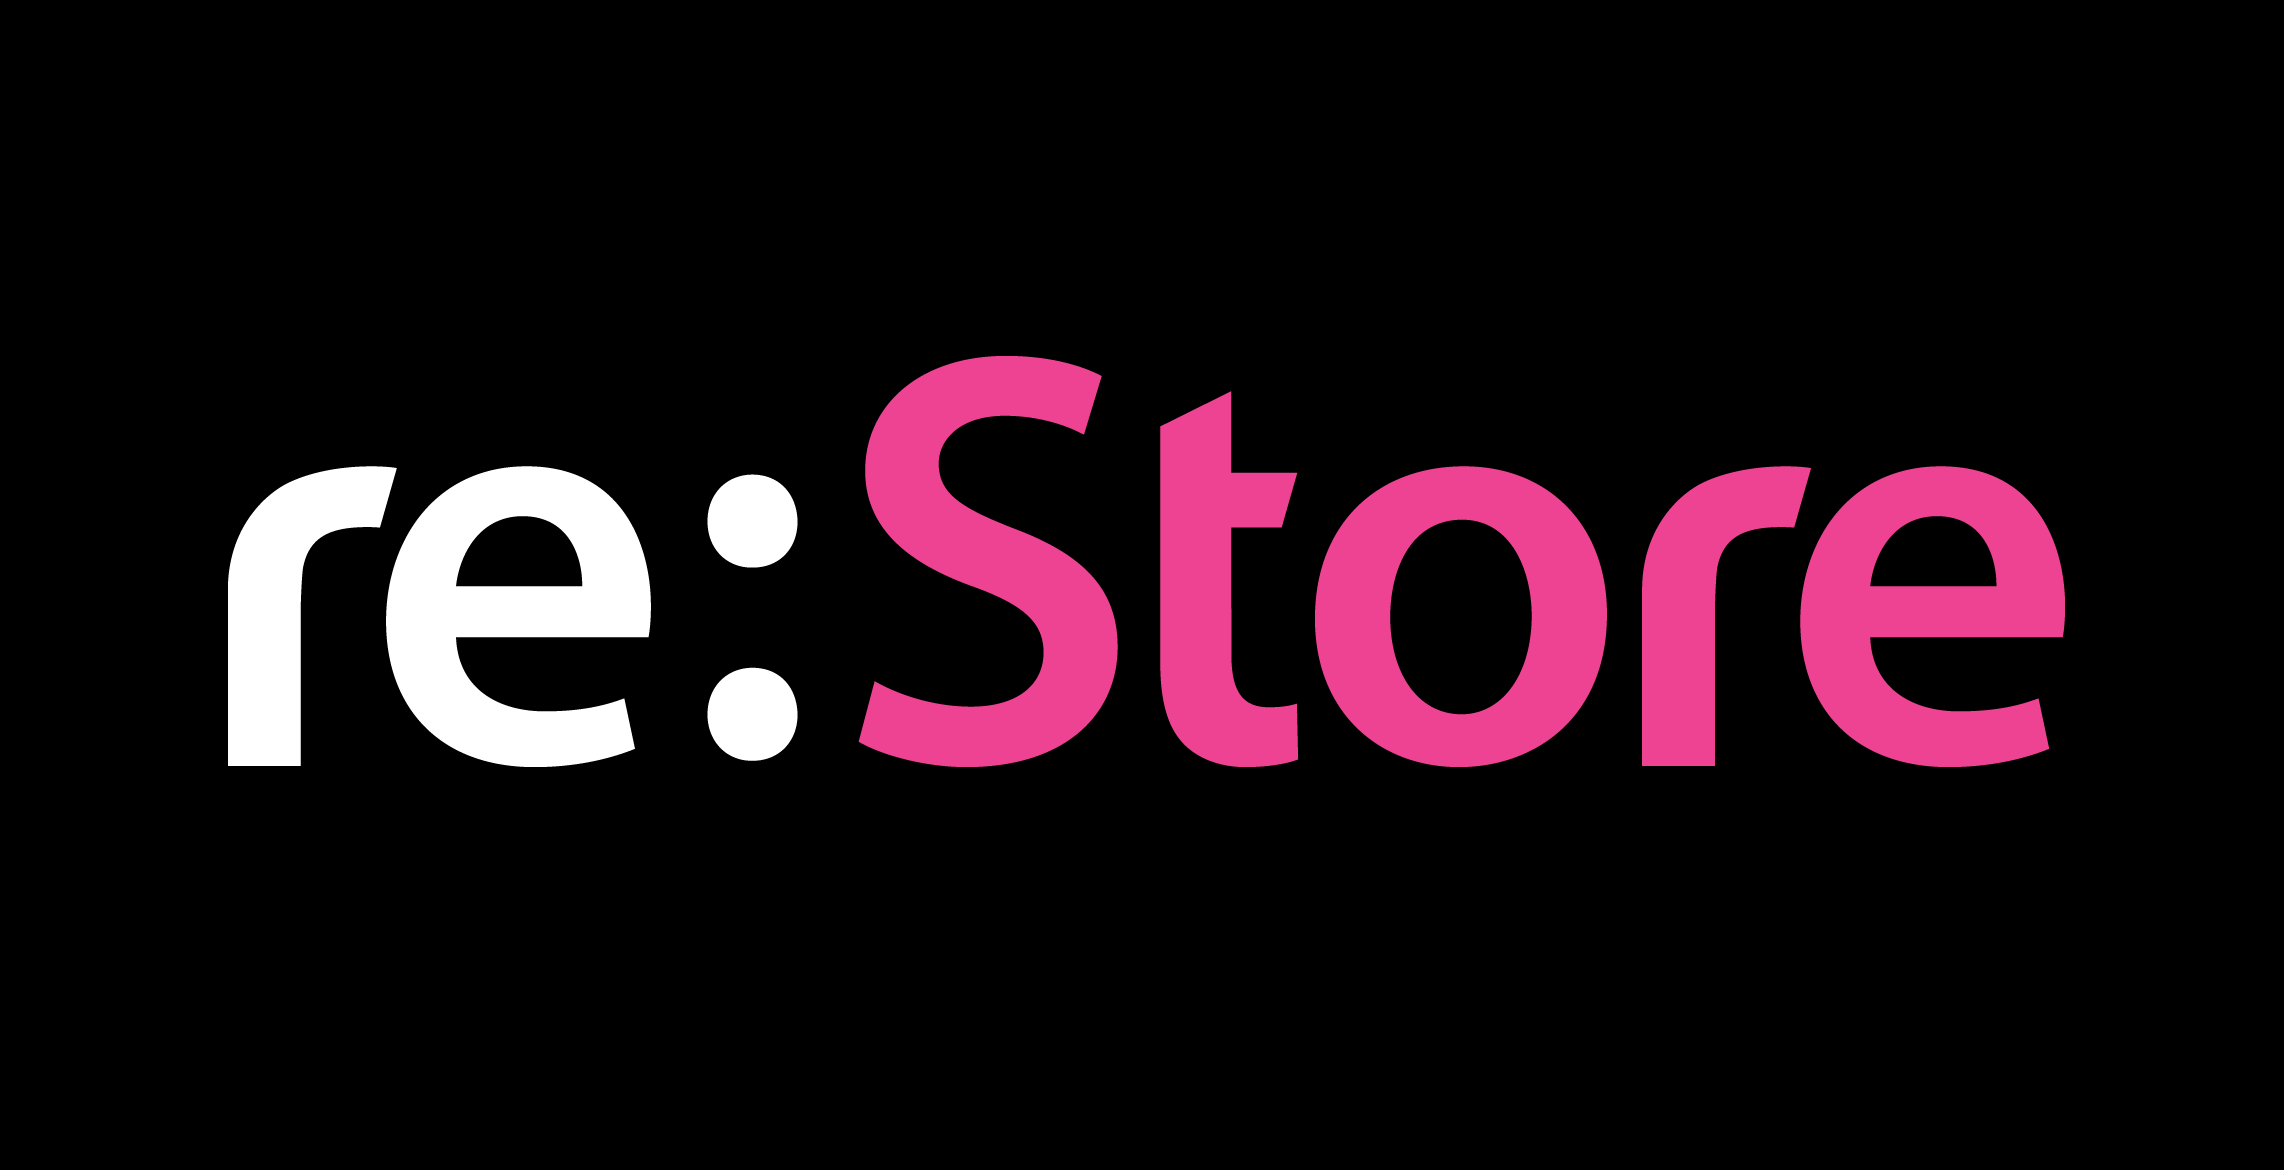 Apple re store. Re Store. Restore лого. Store логотип. Re:Store (рестор).